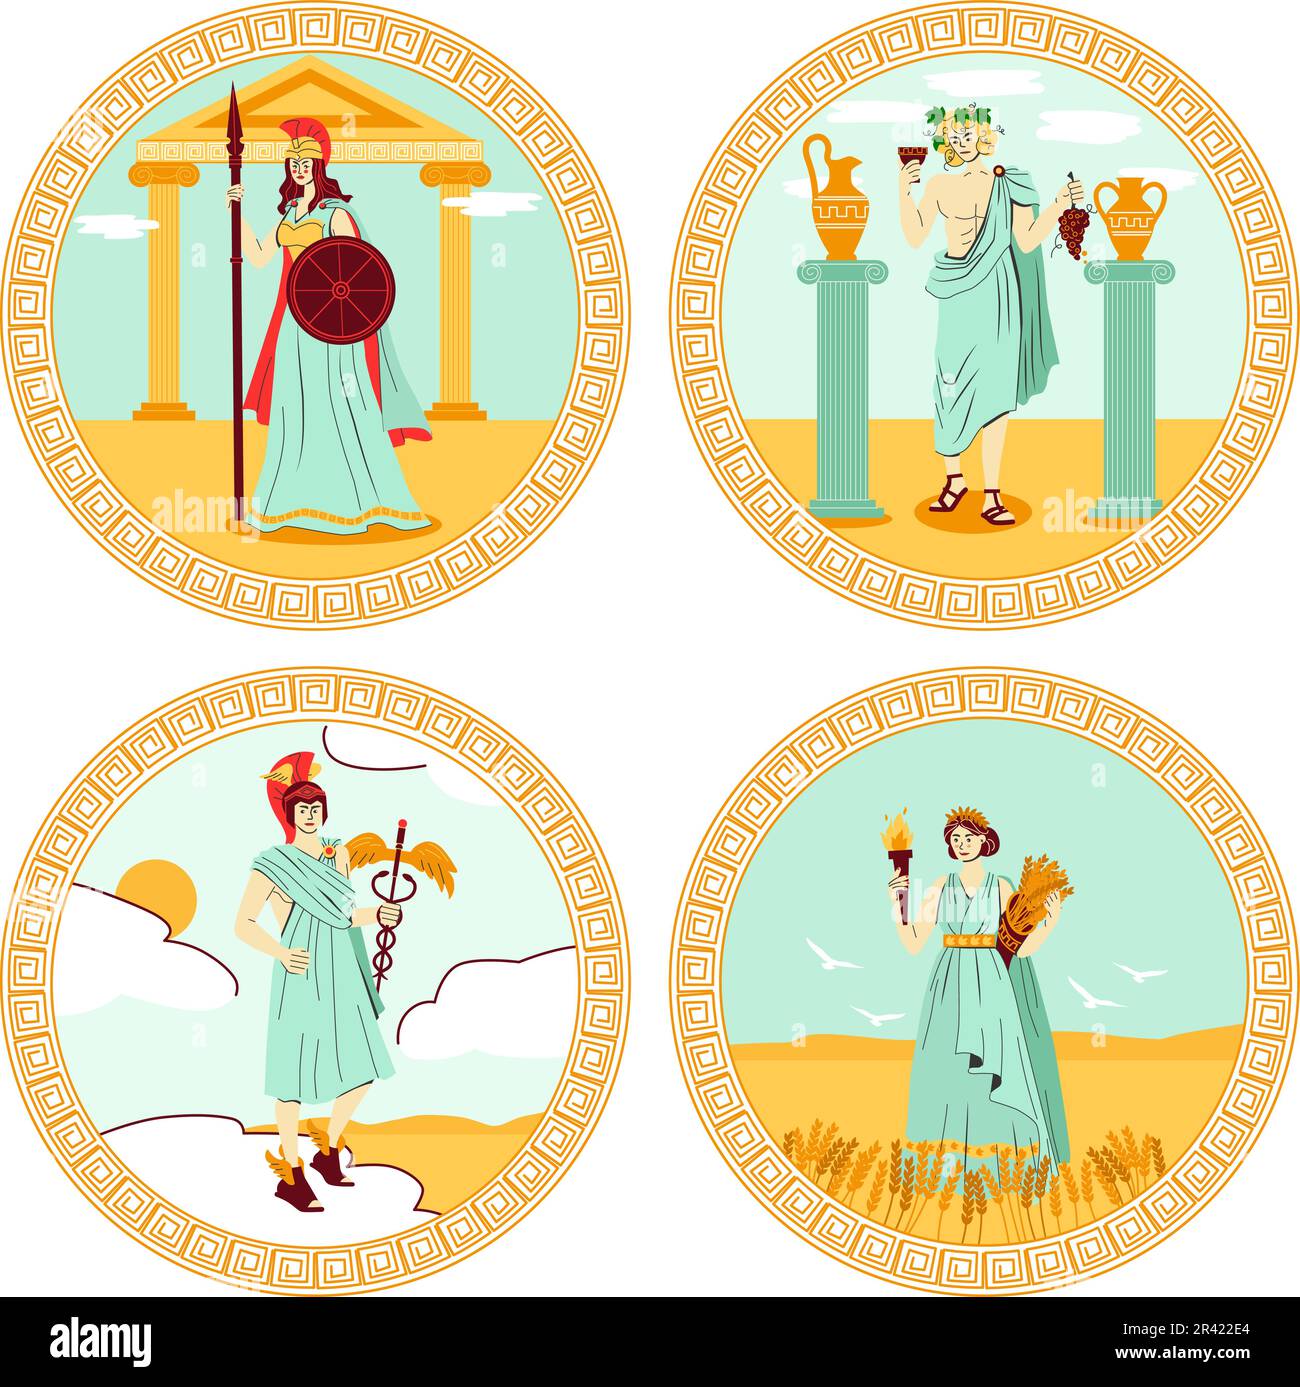 Olympus-Götter vier runde farbige Embleme mit hermes athena Demeter dionysius Persons flache isolierte Vektordarstellung Stock Vektor